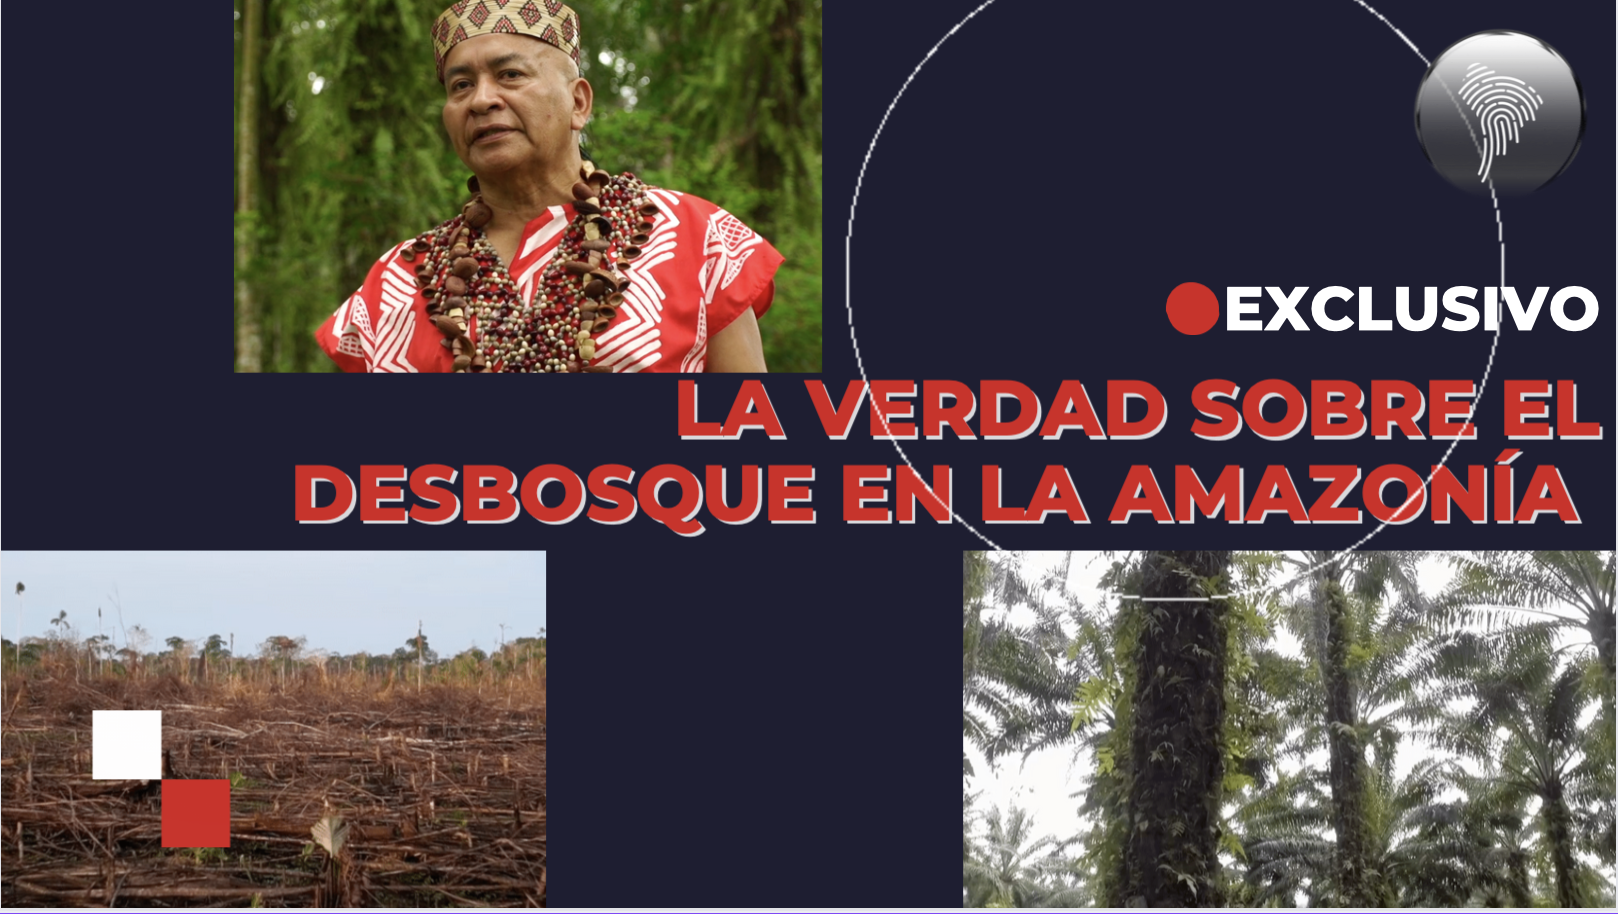 La verdad sobre el desbosque en la amazonía